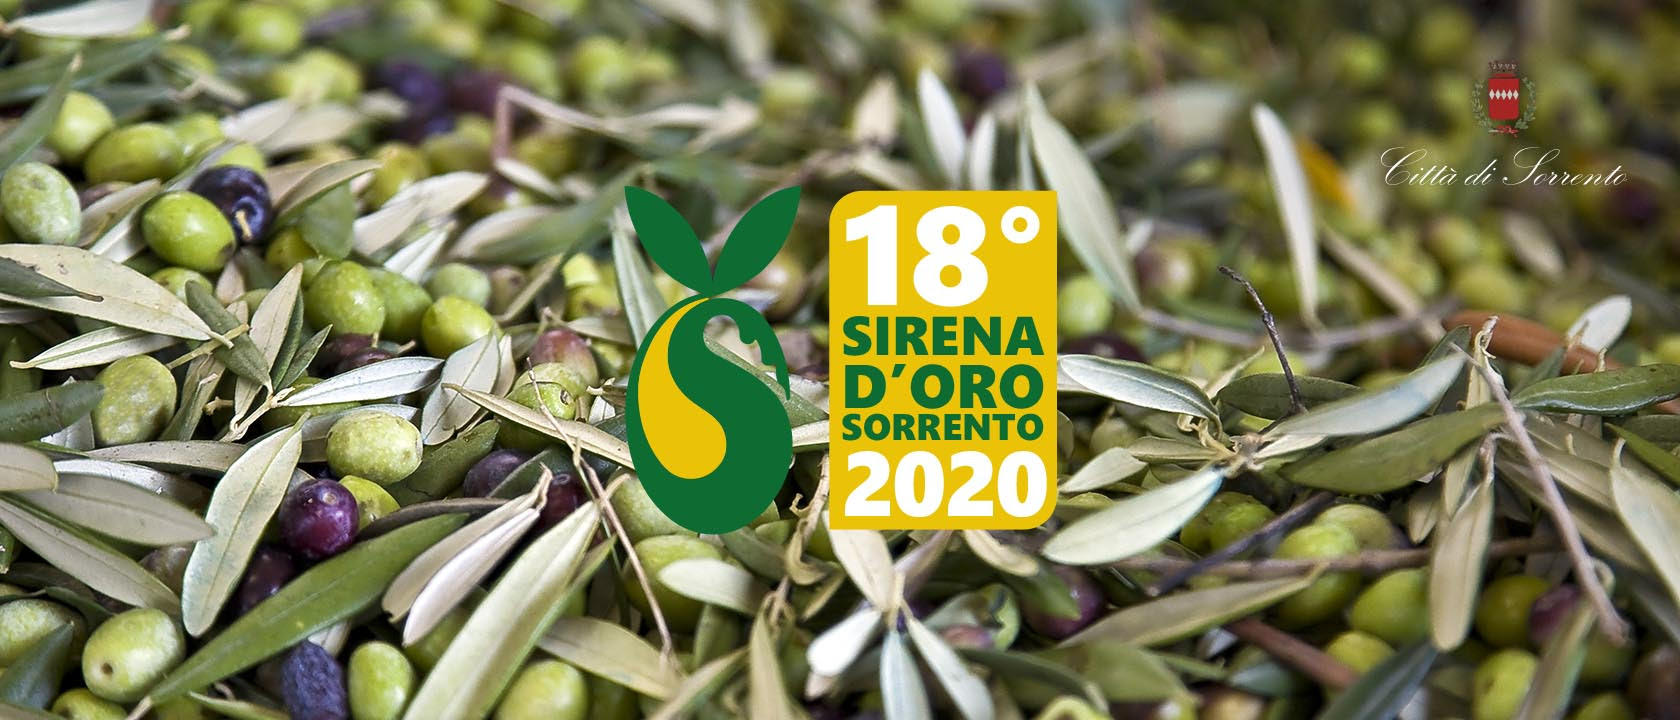 Agroalimentare. Sirena d’Oro, torna il premio dedicato agli oli Dop, Igp e Bio italiani